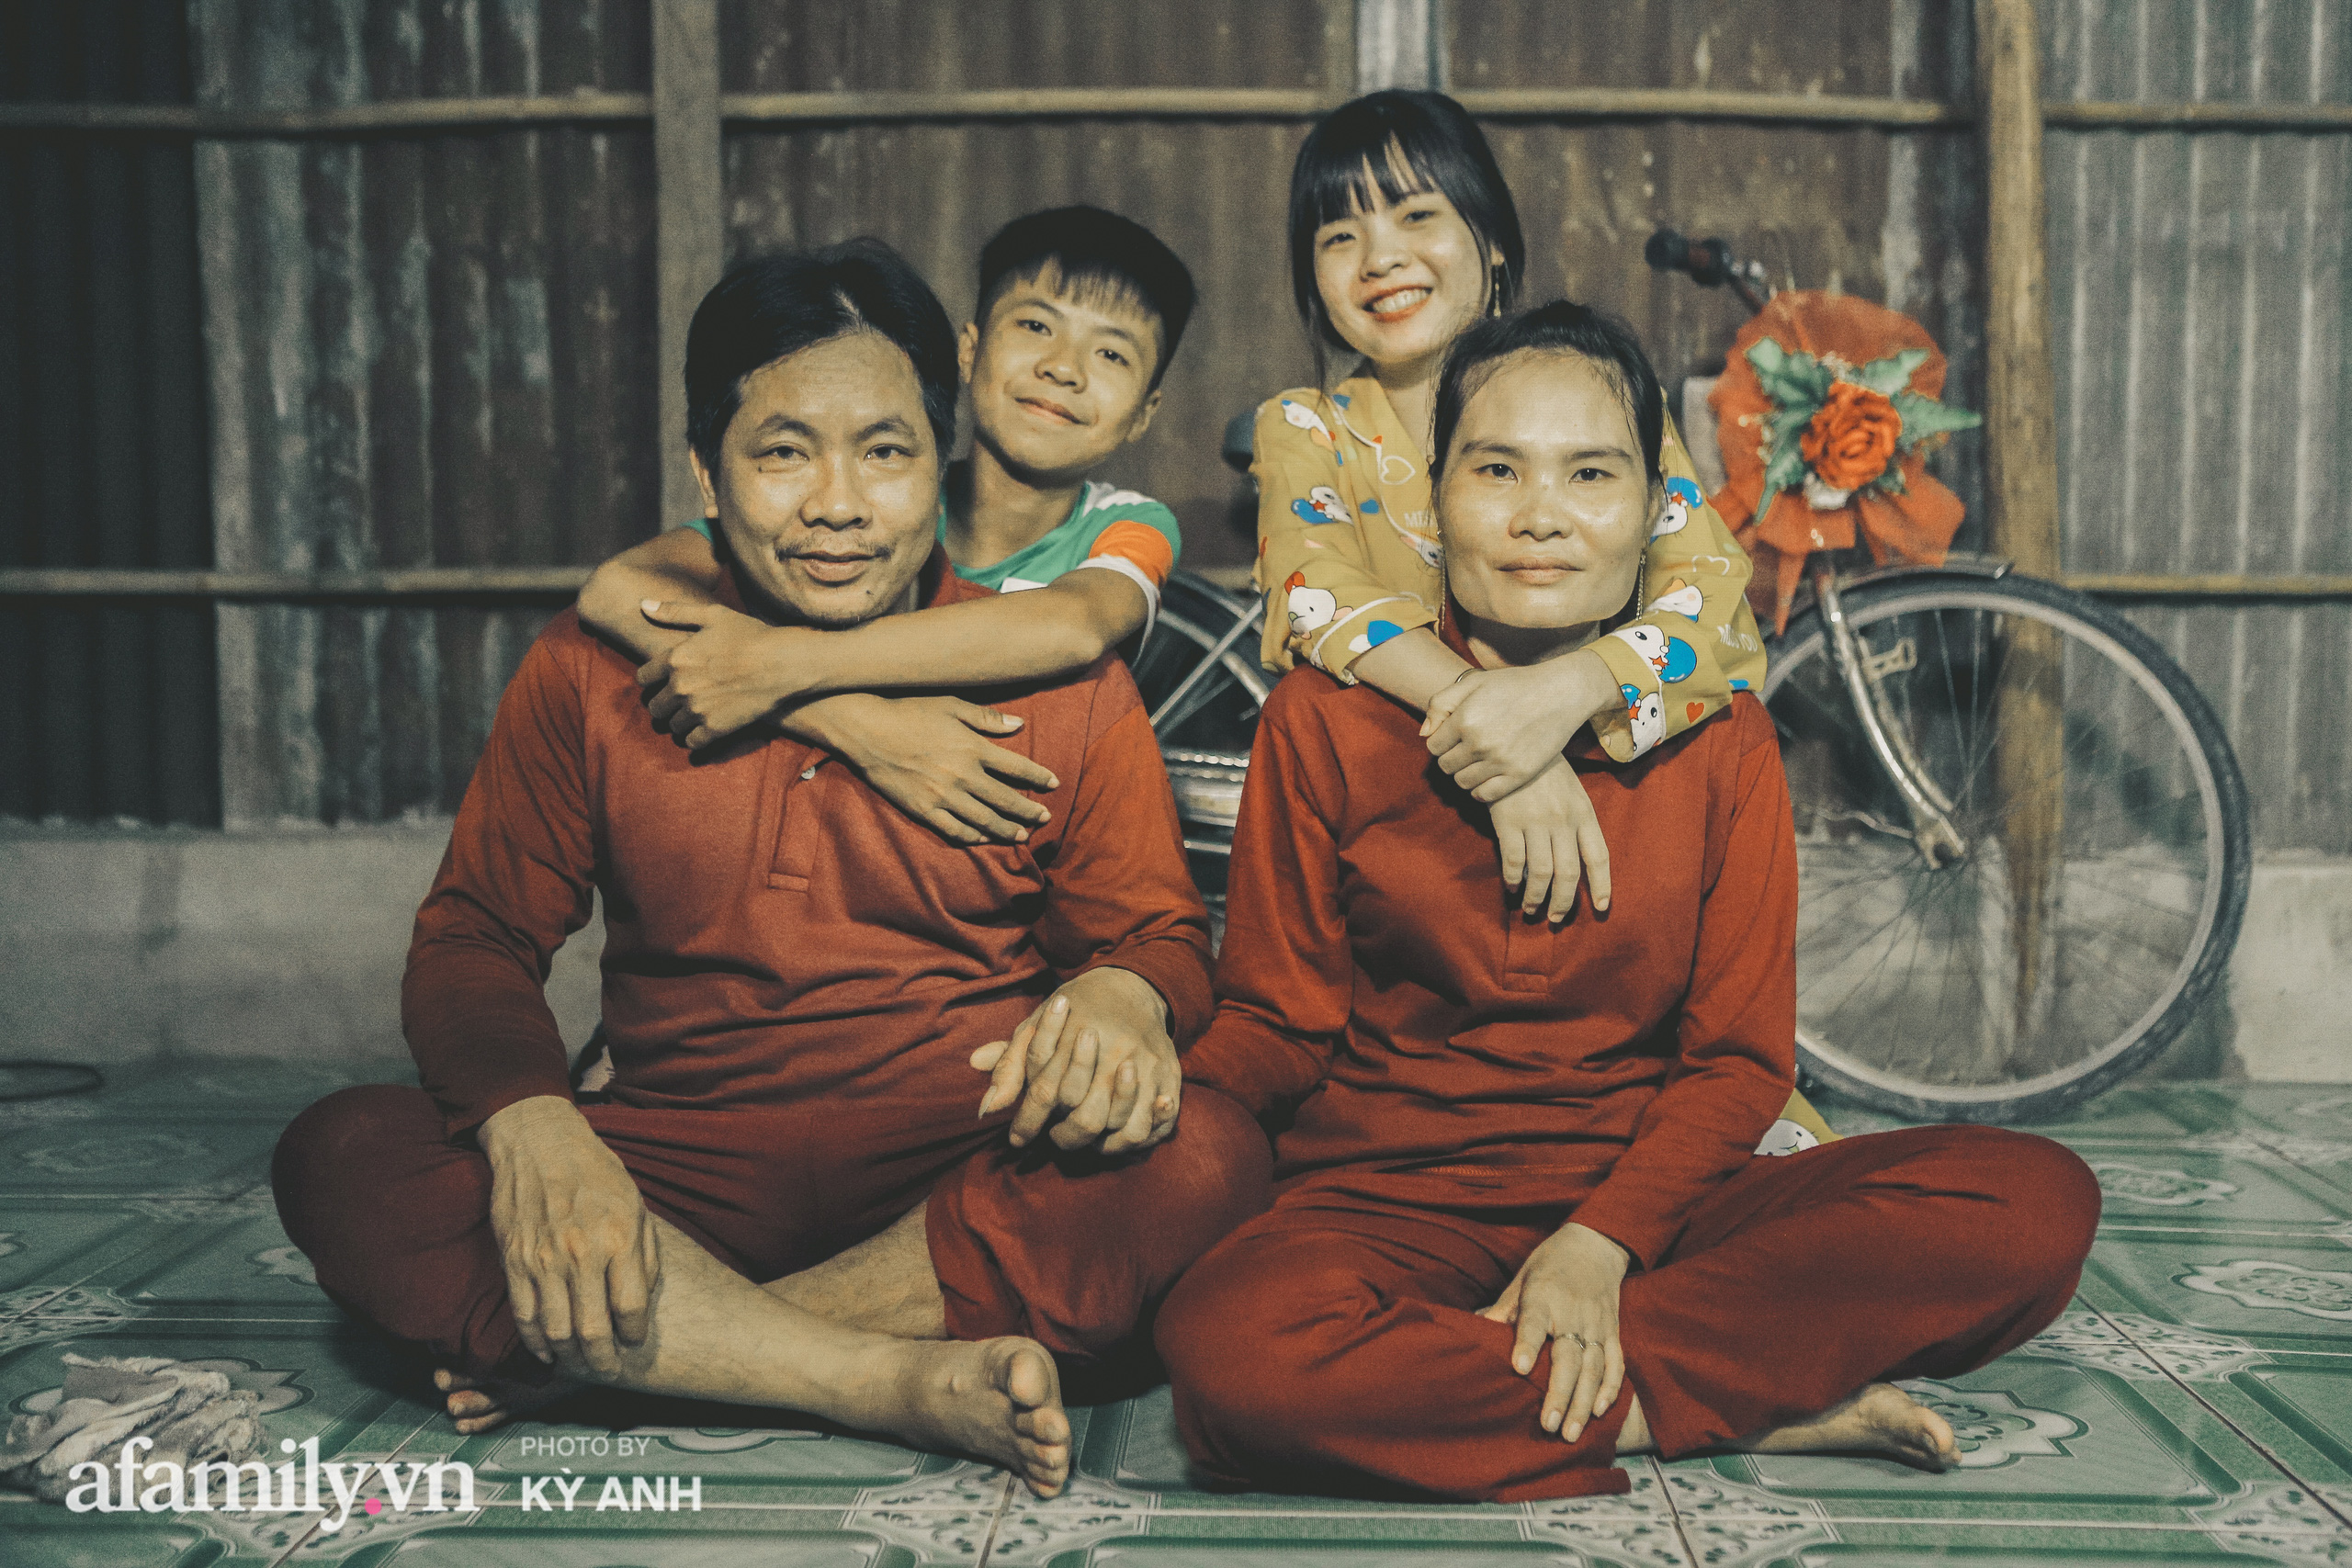 Hành trình của 3 anh em đạp xe đạp 400km từ Cà Mau lên Sài Gòn 5 ngày để thăm mẹ: Dòng tin nhắn cắt đứt hi vọng của người mẹ và đứa trẻ bị sốt rất cao, đi thêm 1 ngày nữa sẽ không sống nổi!  - Ảnh 10.